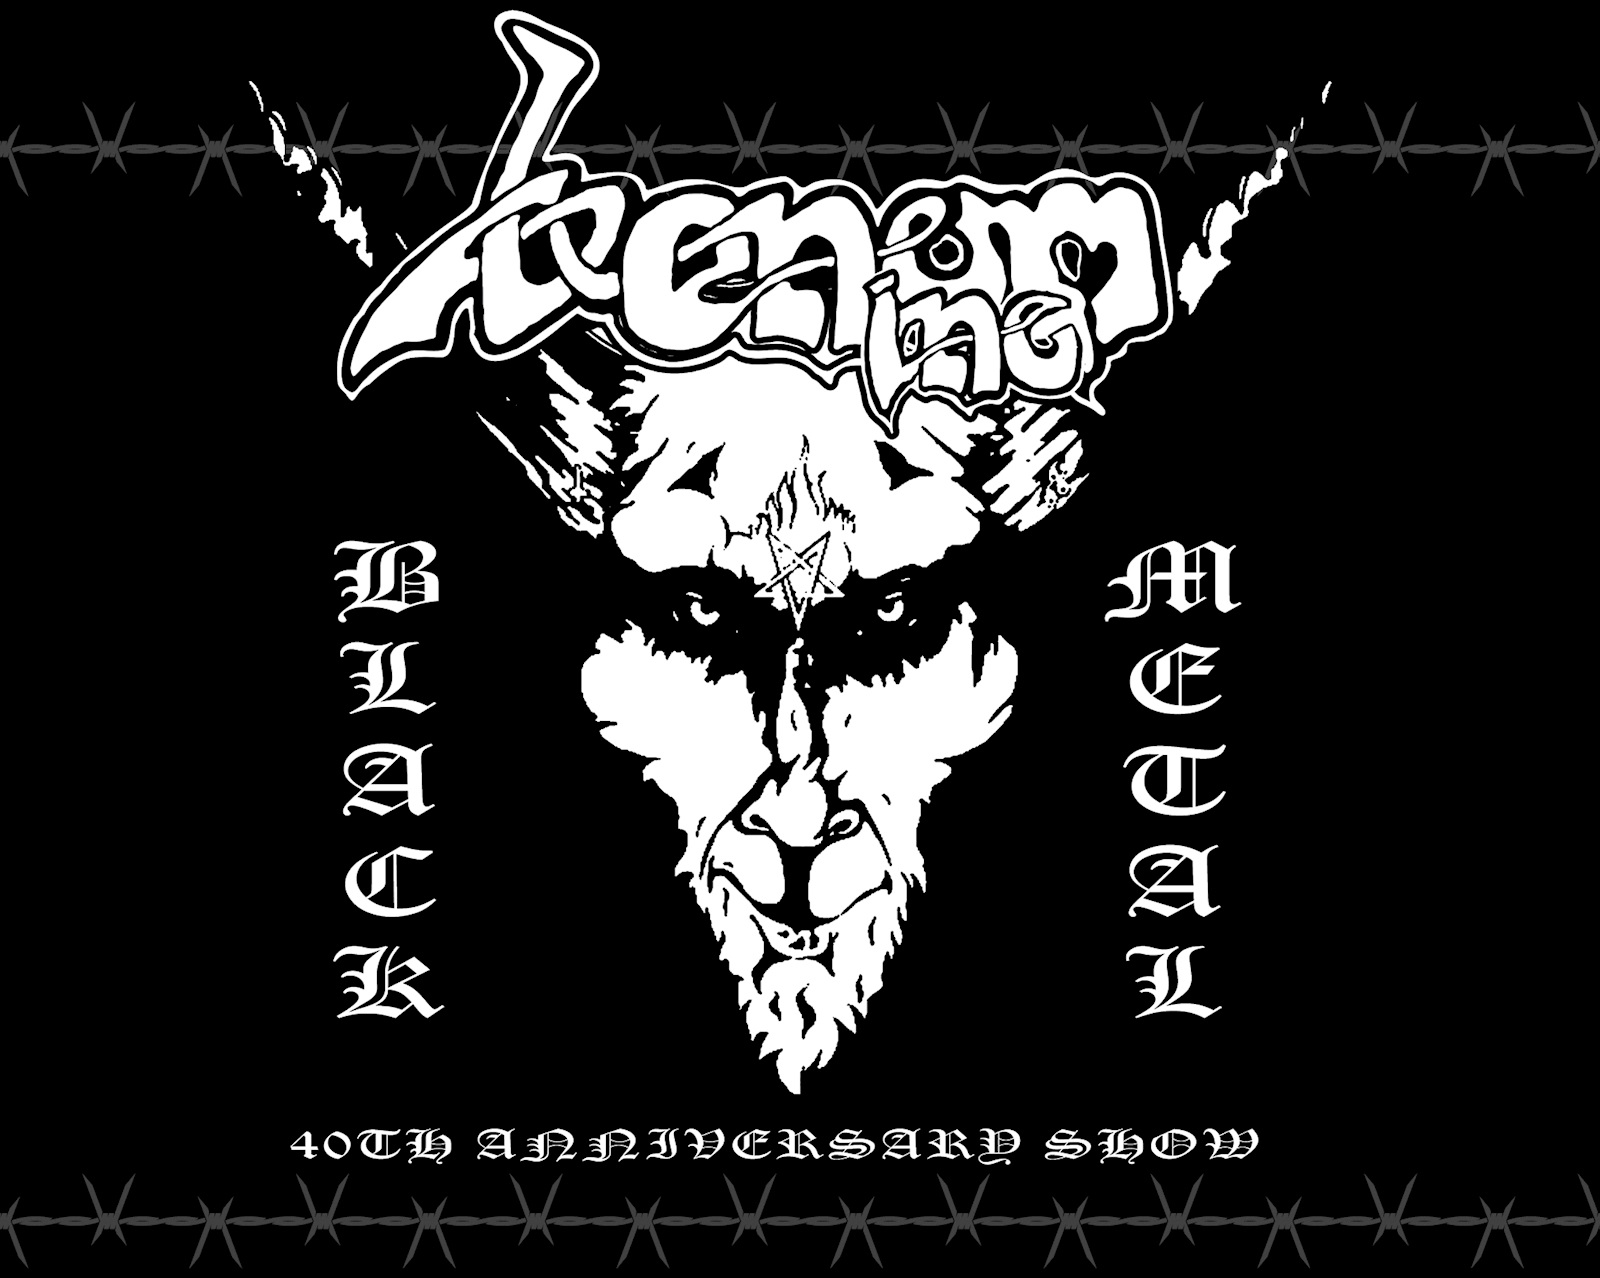 VENOM Inc viert 40ste verjaardag ‘Black Metal’ op ALCATRAZ! Rock Tribune